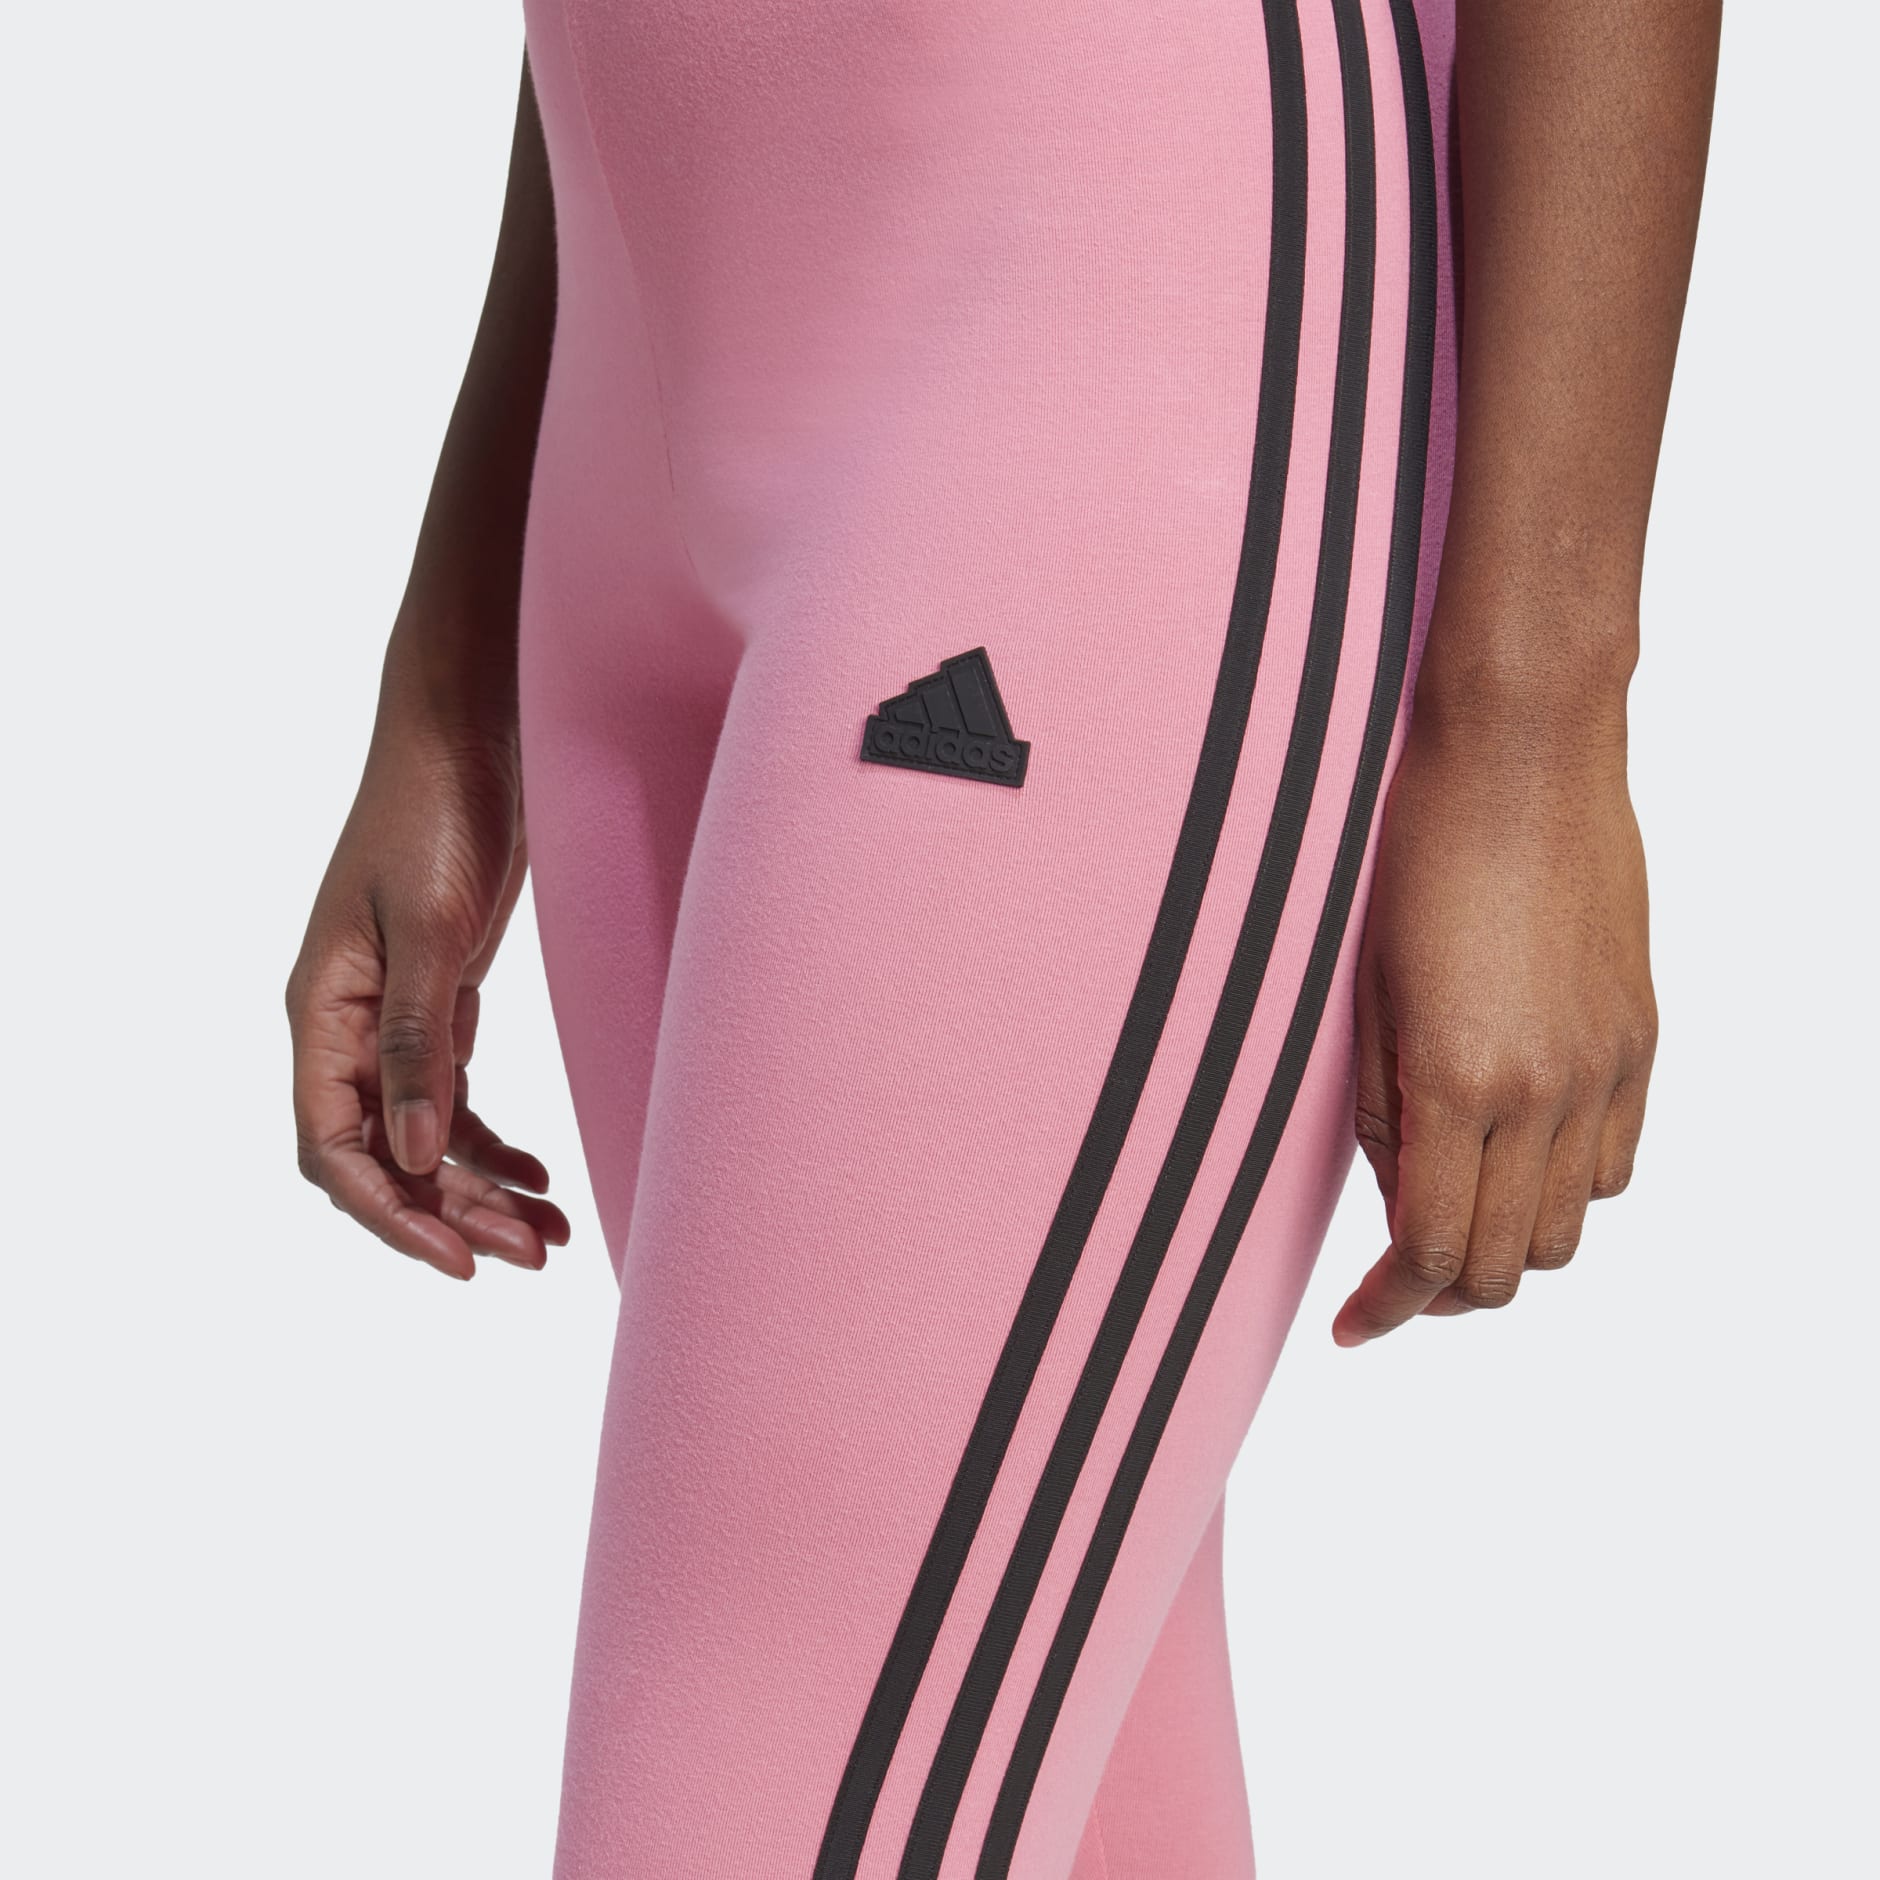 ADIDAS Future Icon 3-Stripes Womens Leggings - BLACK